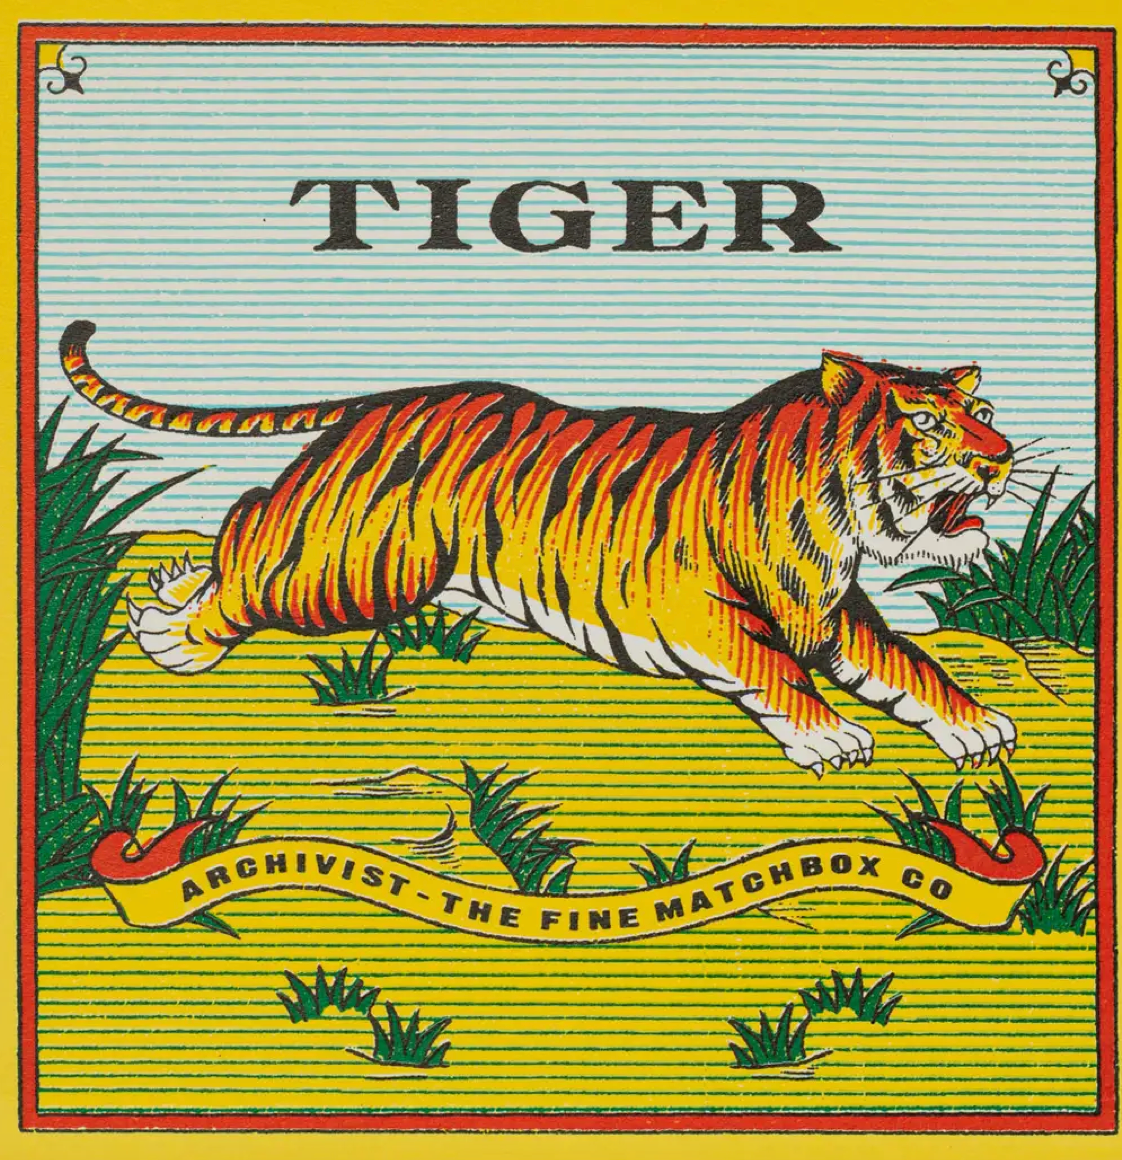 The Tiger Matchbox